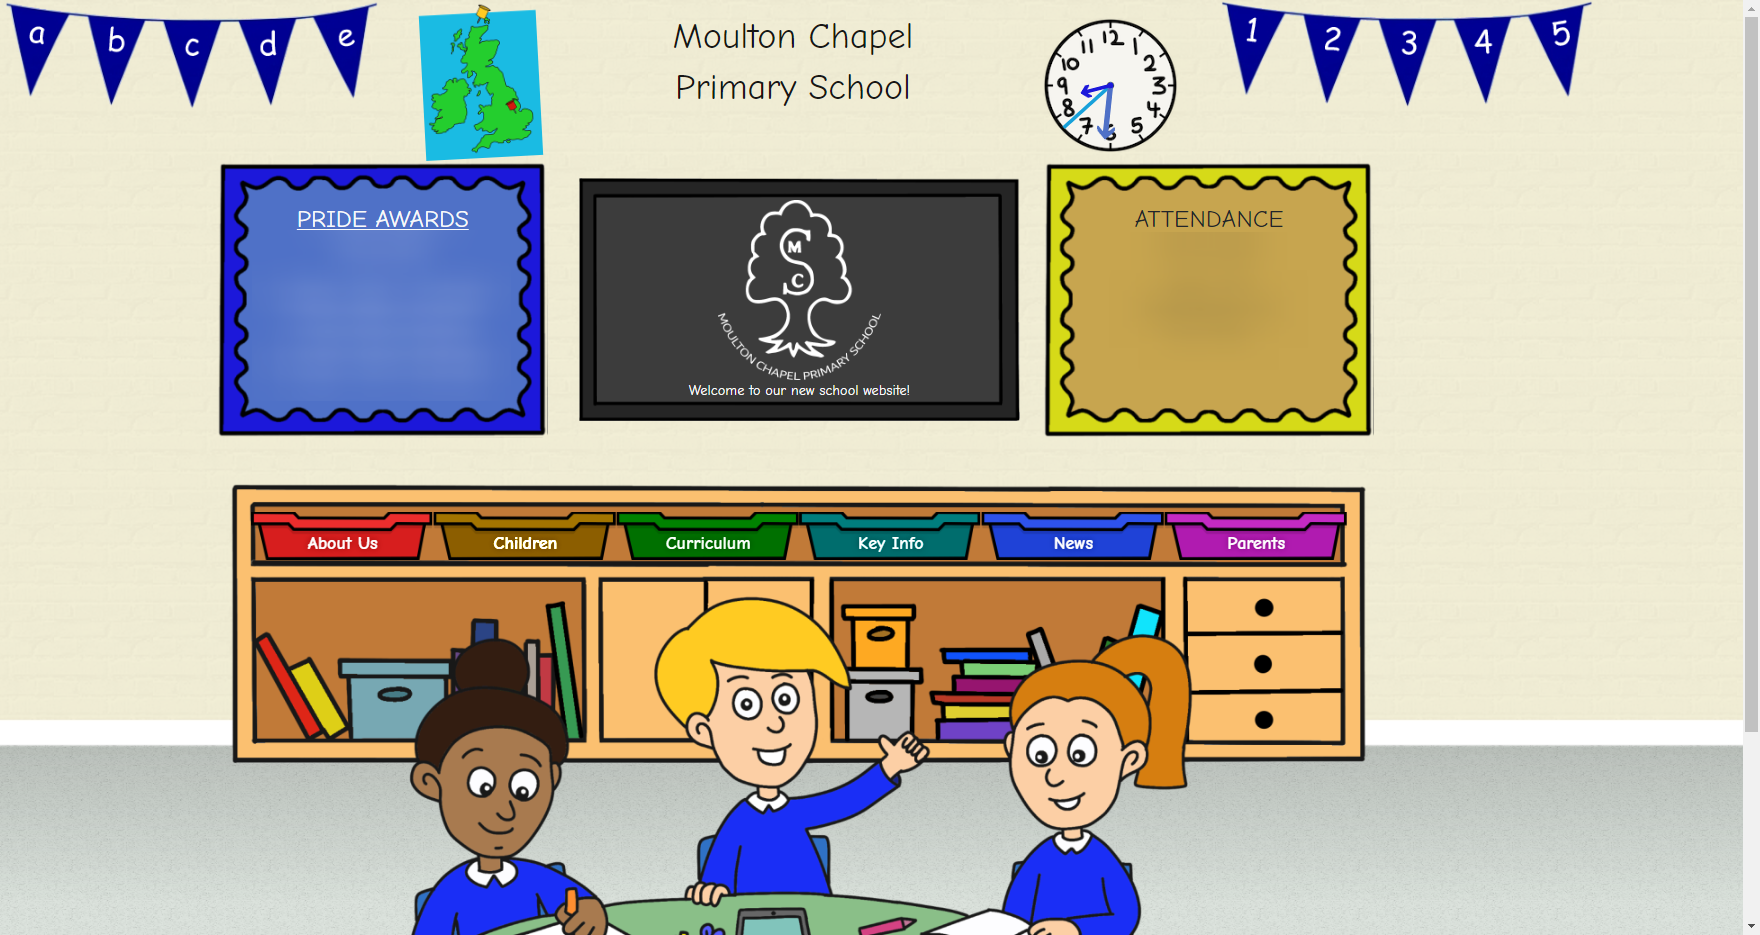 Moulton Chapel Primary School